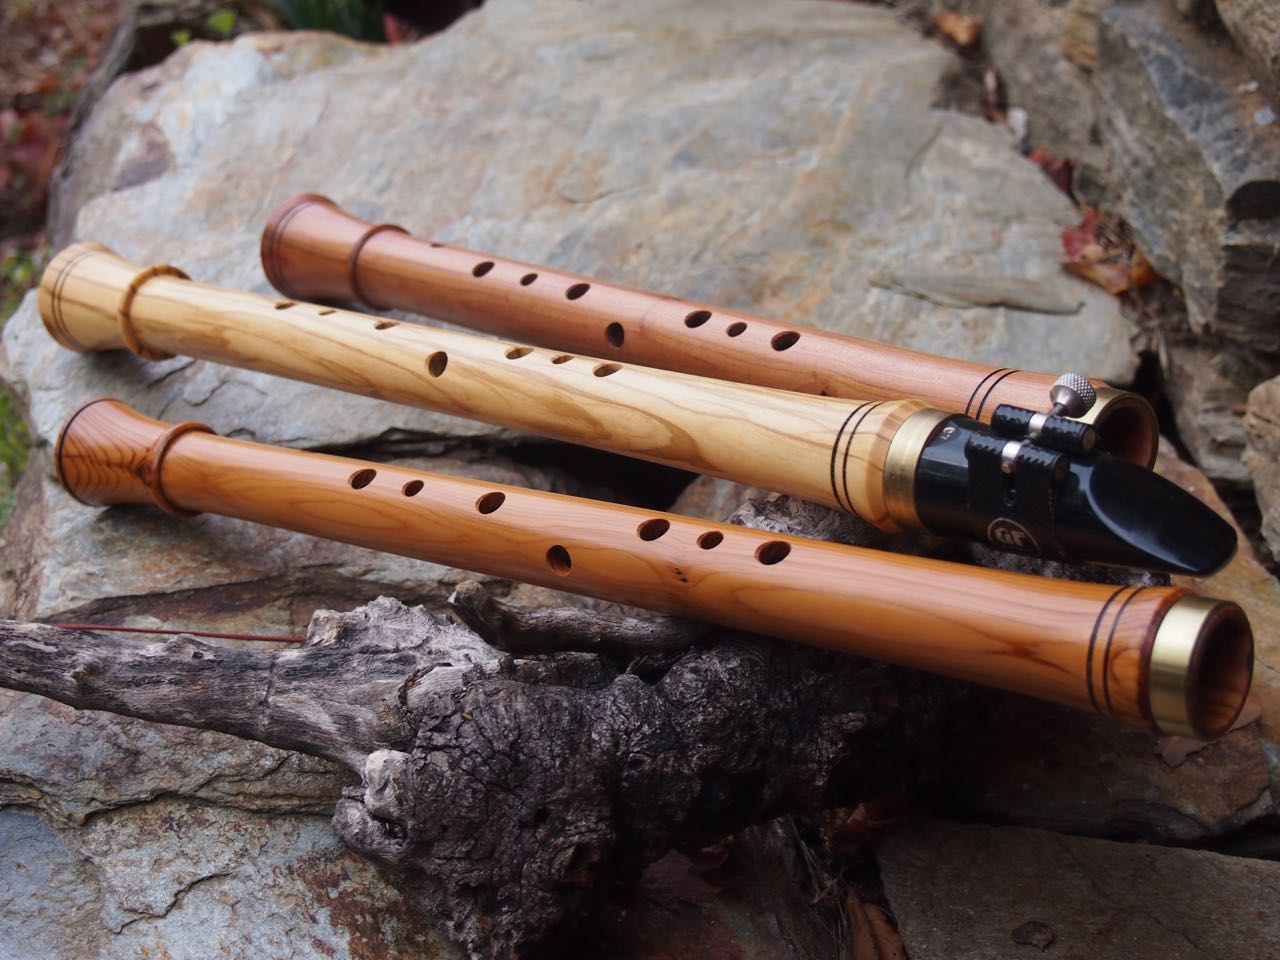 Chalumeau, klarinettenartiges Blasinstrument mit neun Grifflöchern in den Tonlage G